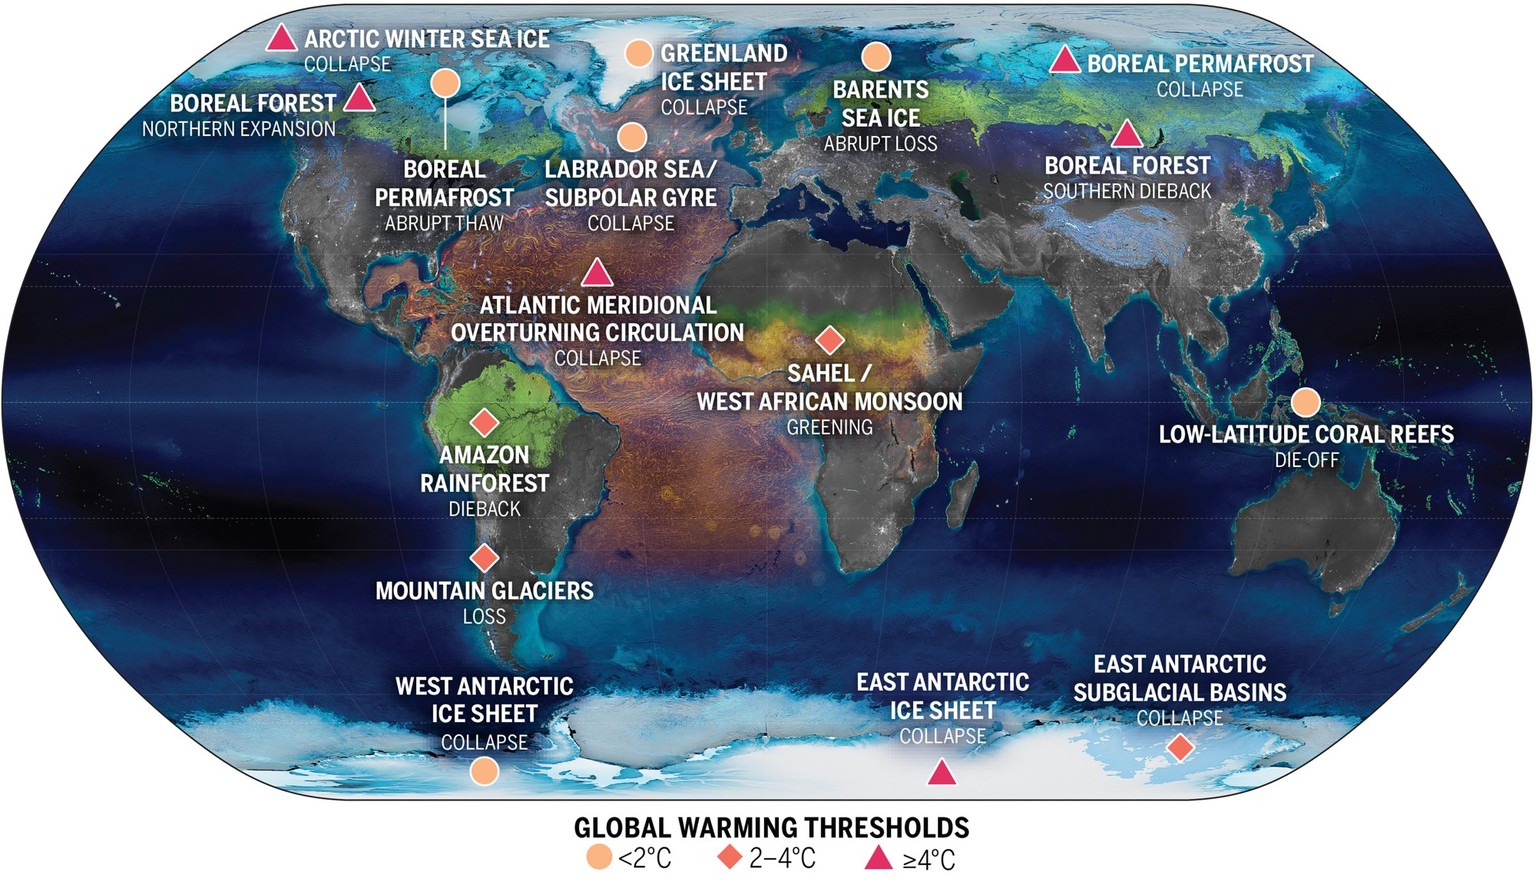 Die Lage der Kipppunkte des Klimas in der Kryosphäre (blau), der Biosphäre (grün) und der Ozeane/Atmosphäre (orange) sowie die Höhe der globalen Erwärmung, bei der diese Kipppunkte wahrscheinlich ausgelöst werden. Die Farbe und Form der Symbole richtet sich danach, ob der geschätzte zentrale Schwellenwert für die globale Erwärmung unter 2° C liegt (hellorange Kreise), zwischen 2° und 4° C (orange Rauten) oder bei 4° C und darüber (rote Dreiecke).   